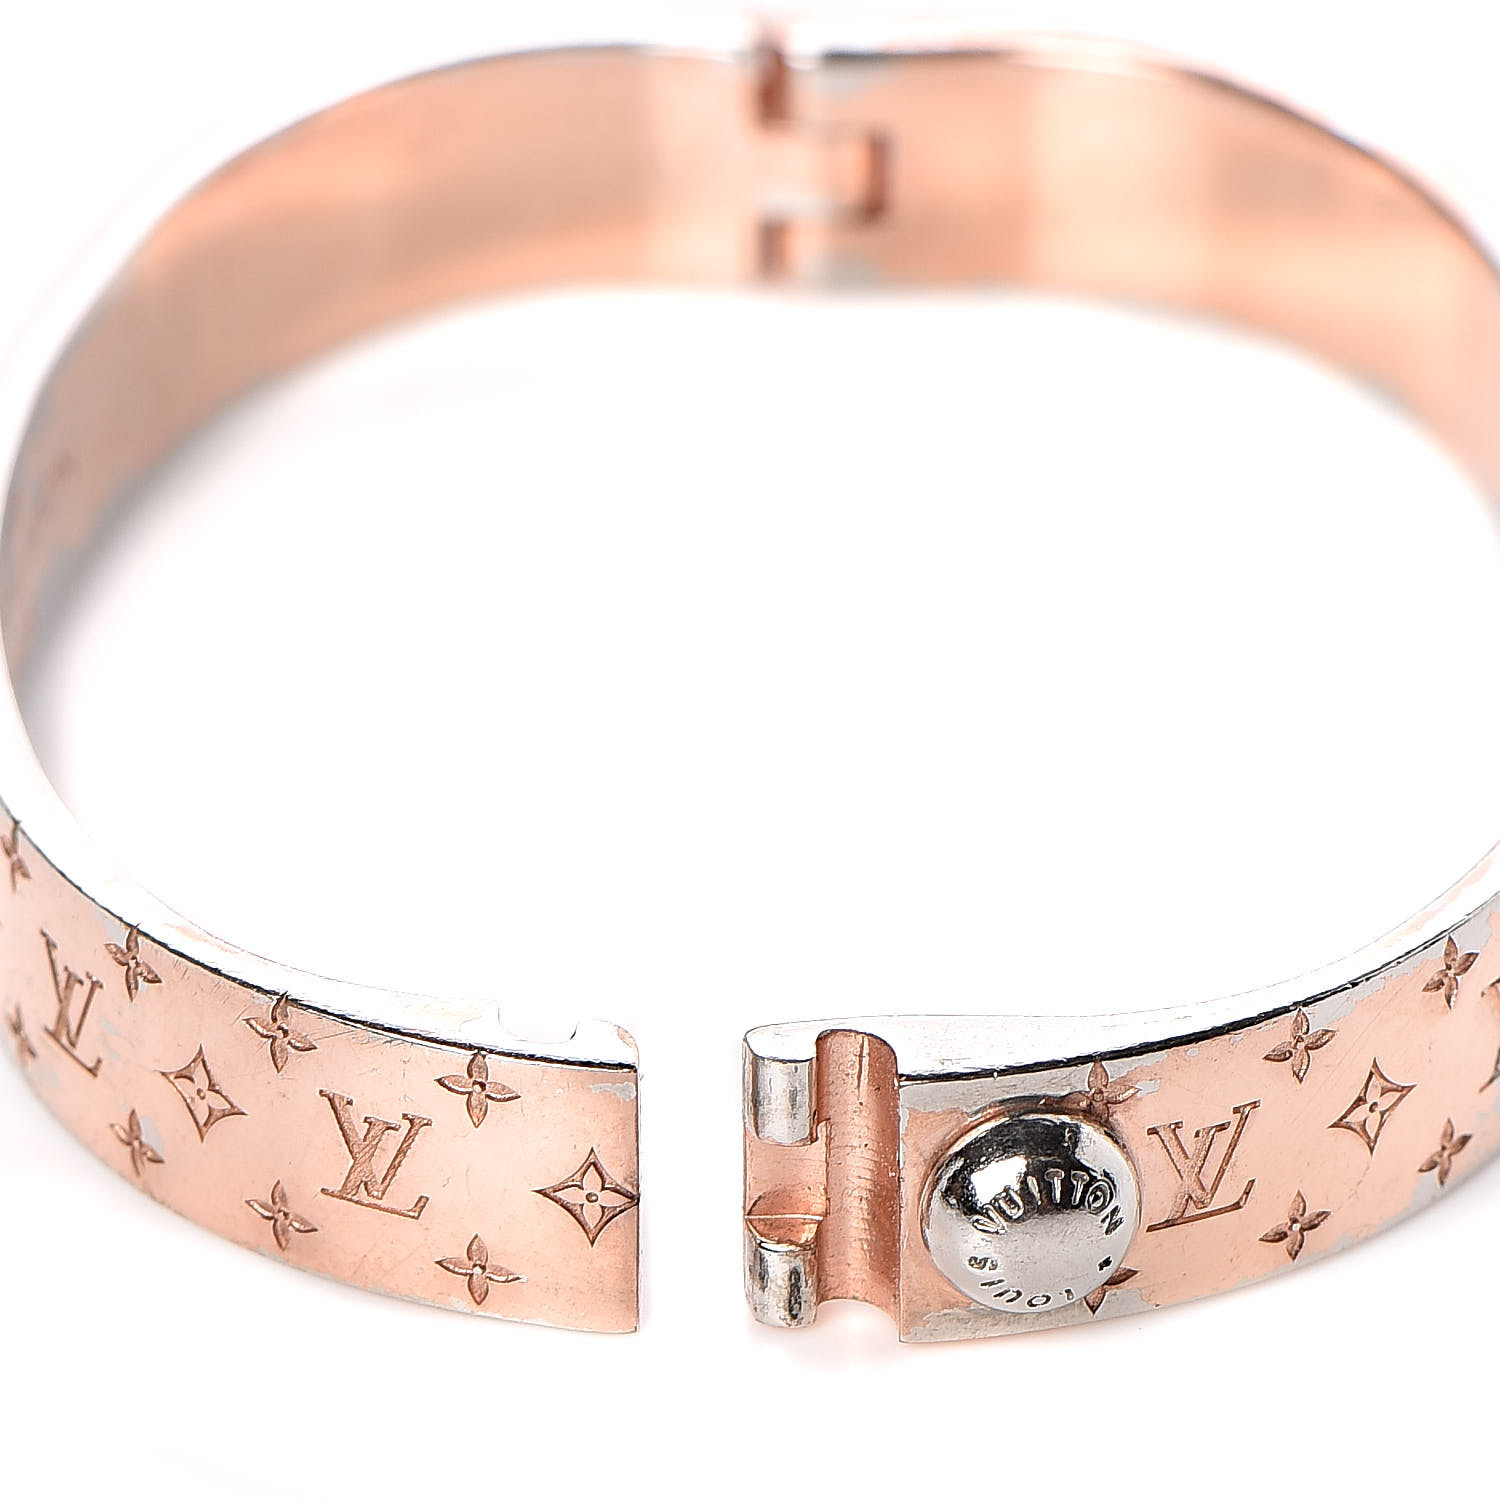 Louis Vuitton NANOGRAM Cuff Bracelet Unboxing & Shopping at Harrods 